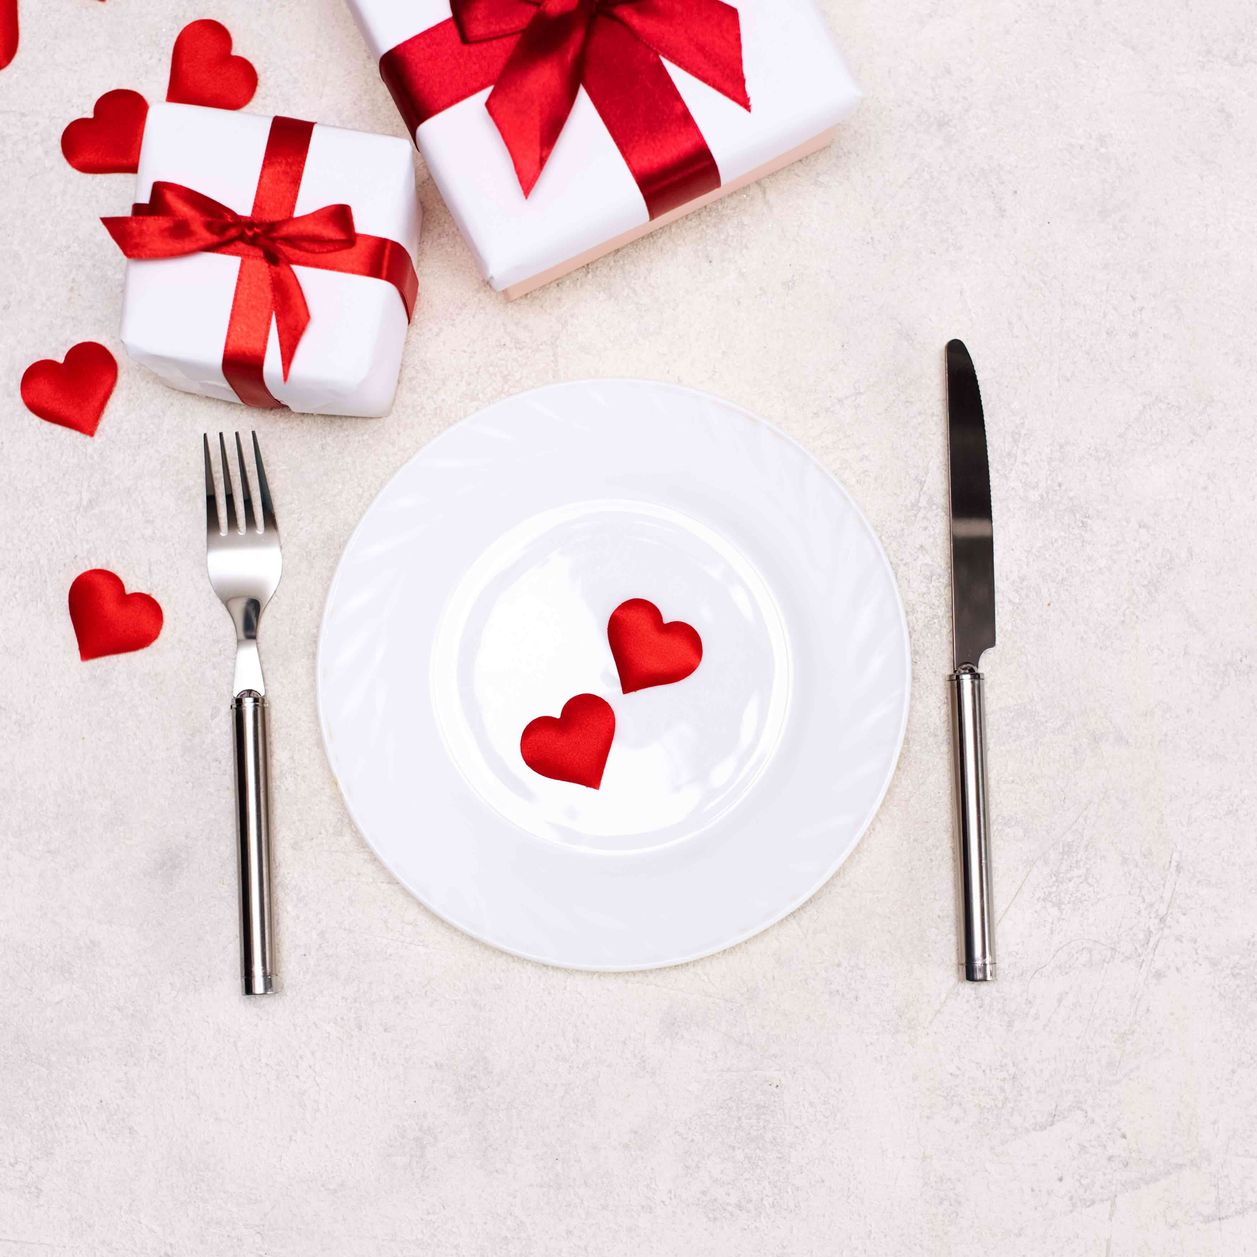 ¿Cuál es tu comida ideal para el día de San Valentín?